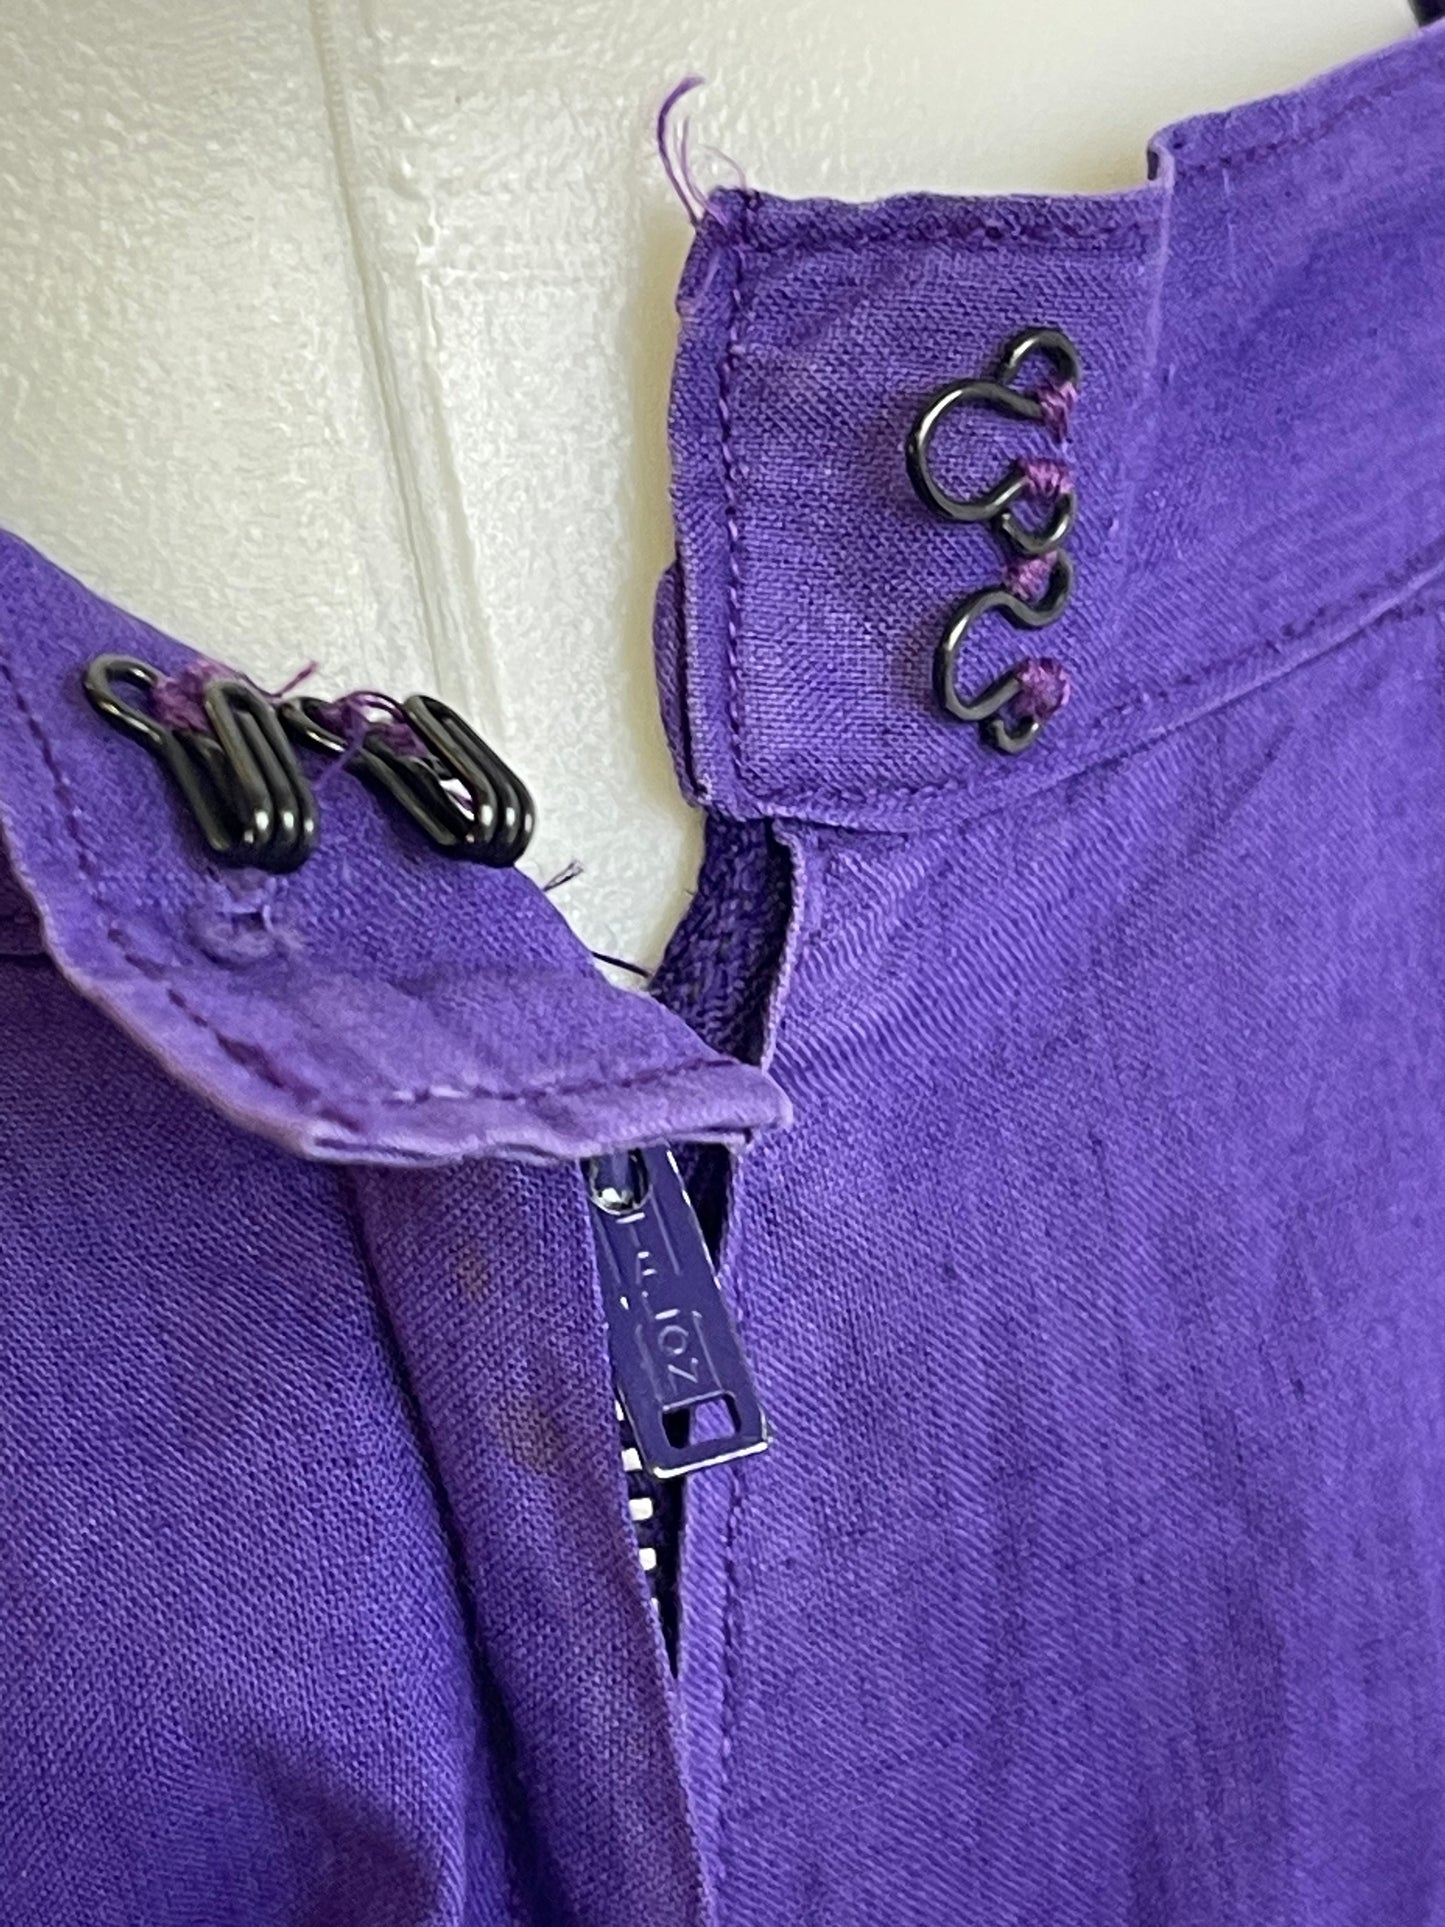 Purple Cotton Skirt